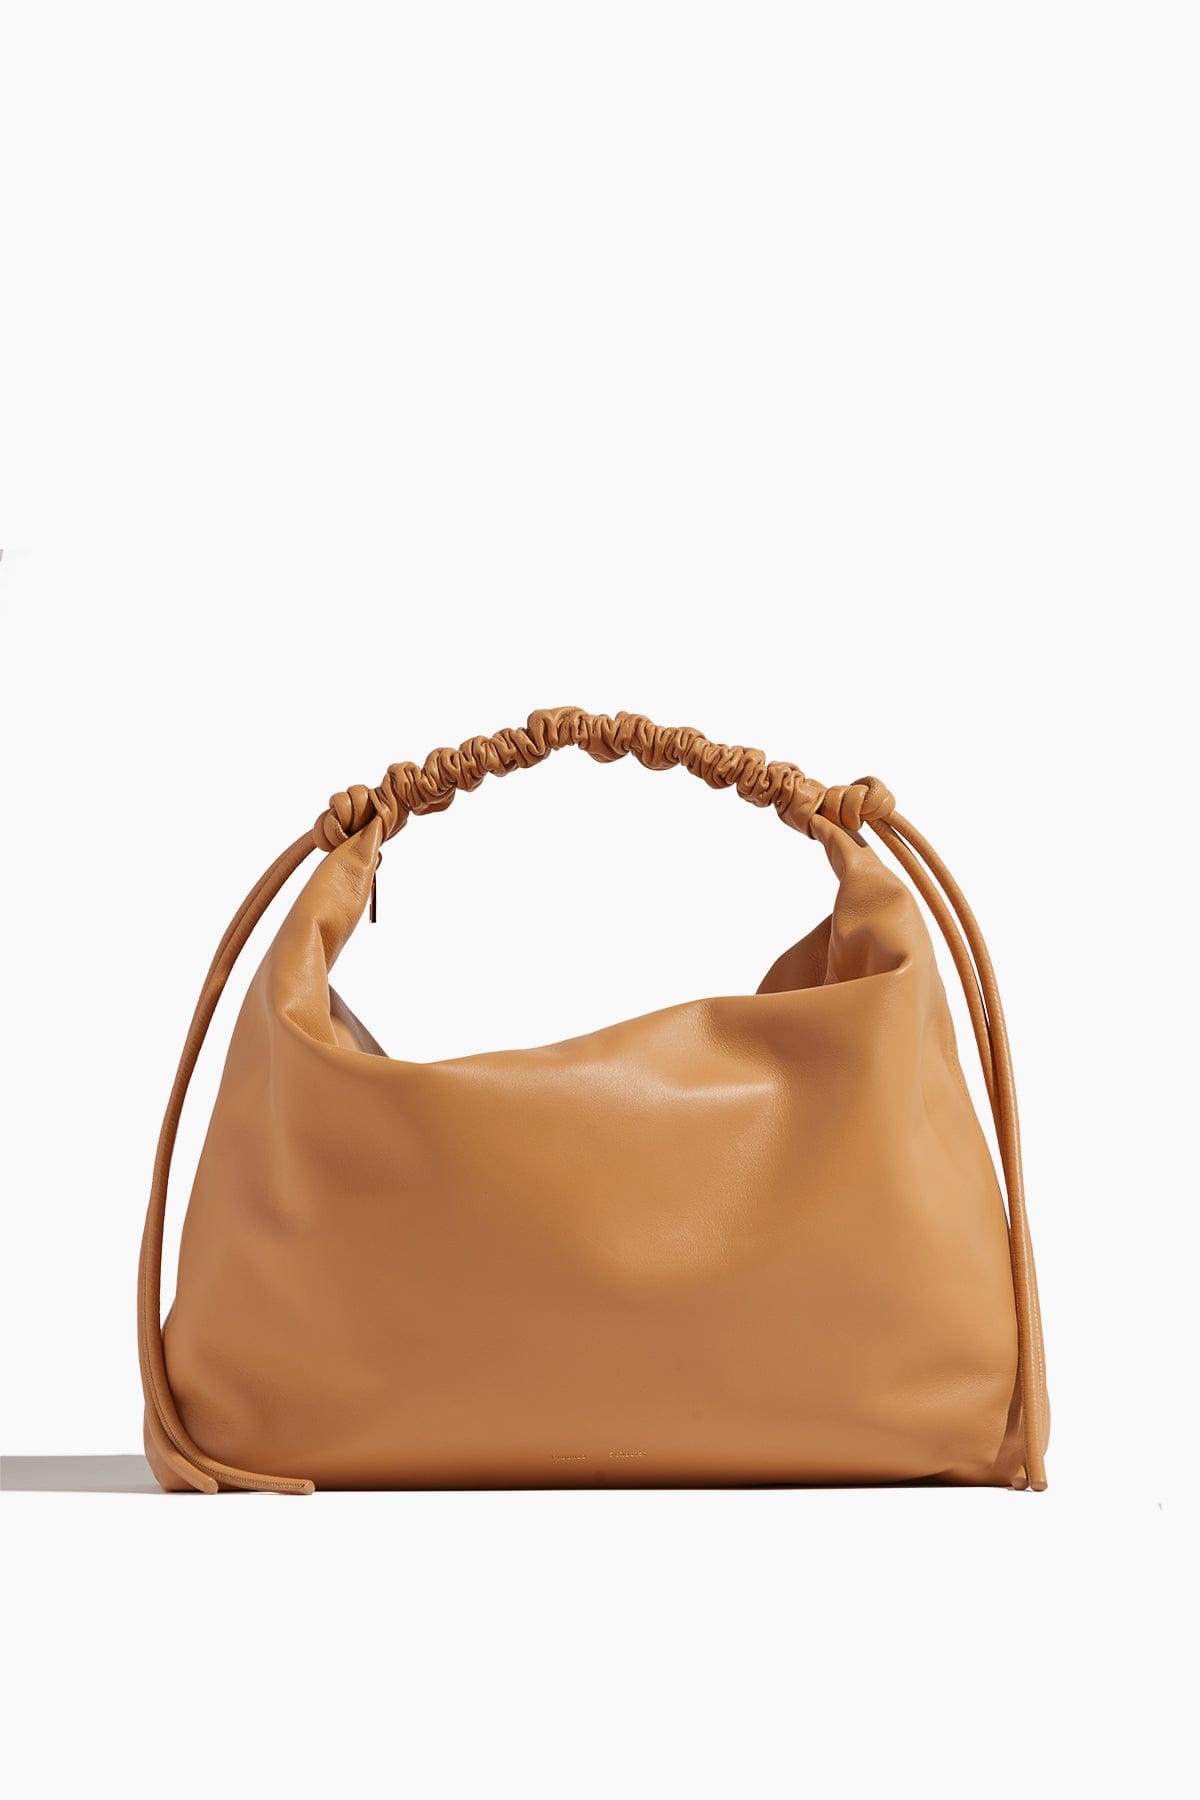 Proenza Schouler Handbags Shoulder Bags Large Drawstring Shoulder Bag in Sand